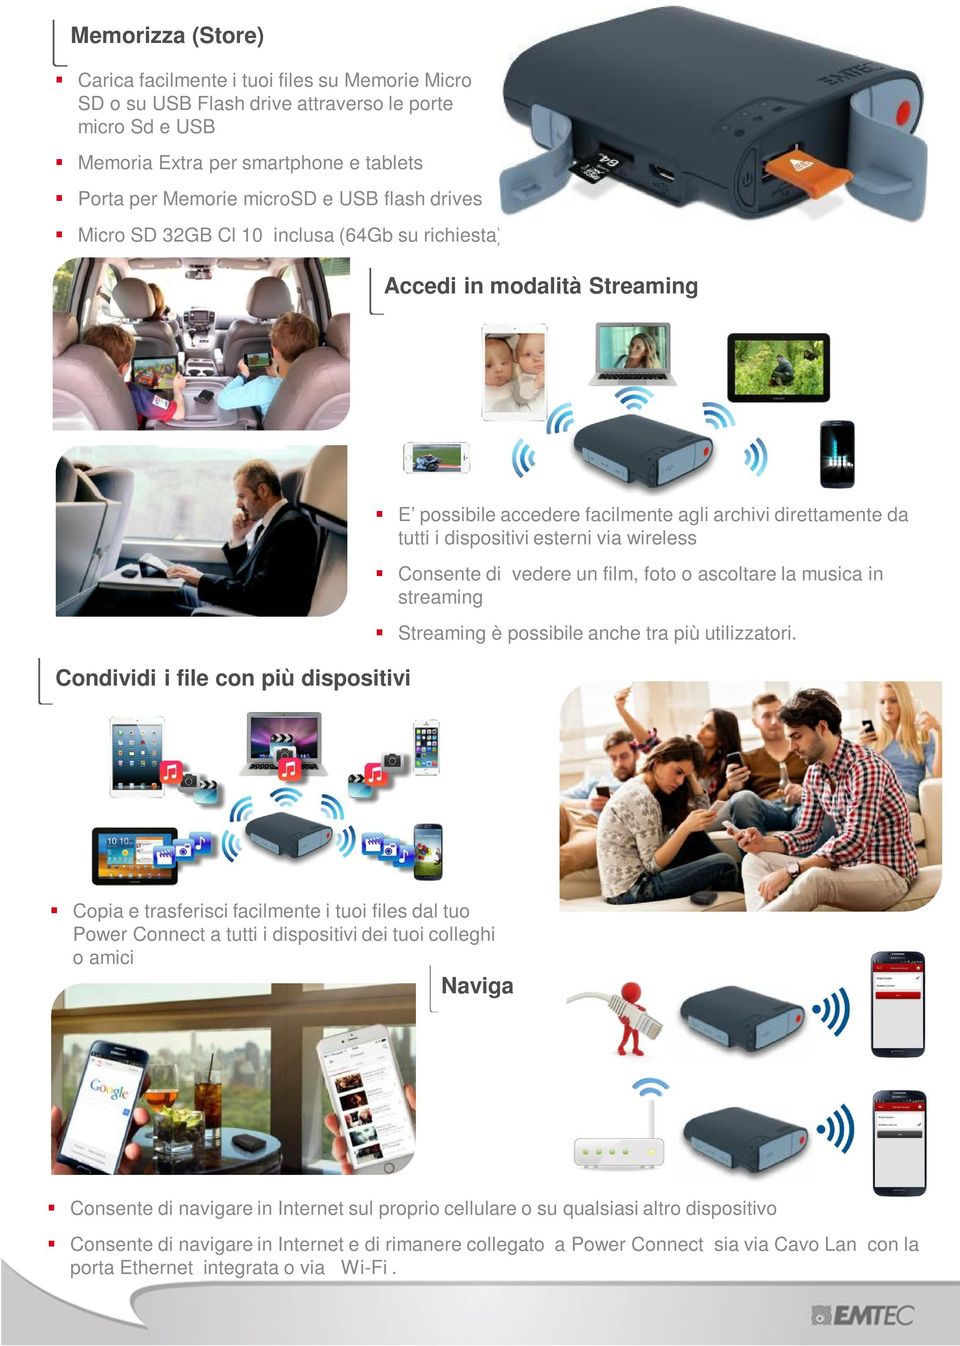 dispositivi esterni via wireless Consente di vedere un film, foto o ascoltare la musica in streaming Streaming è possibile anche tra più utilizzatori.